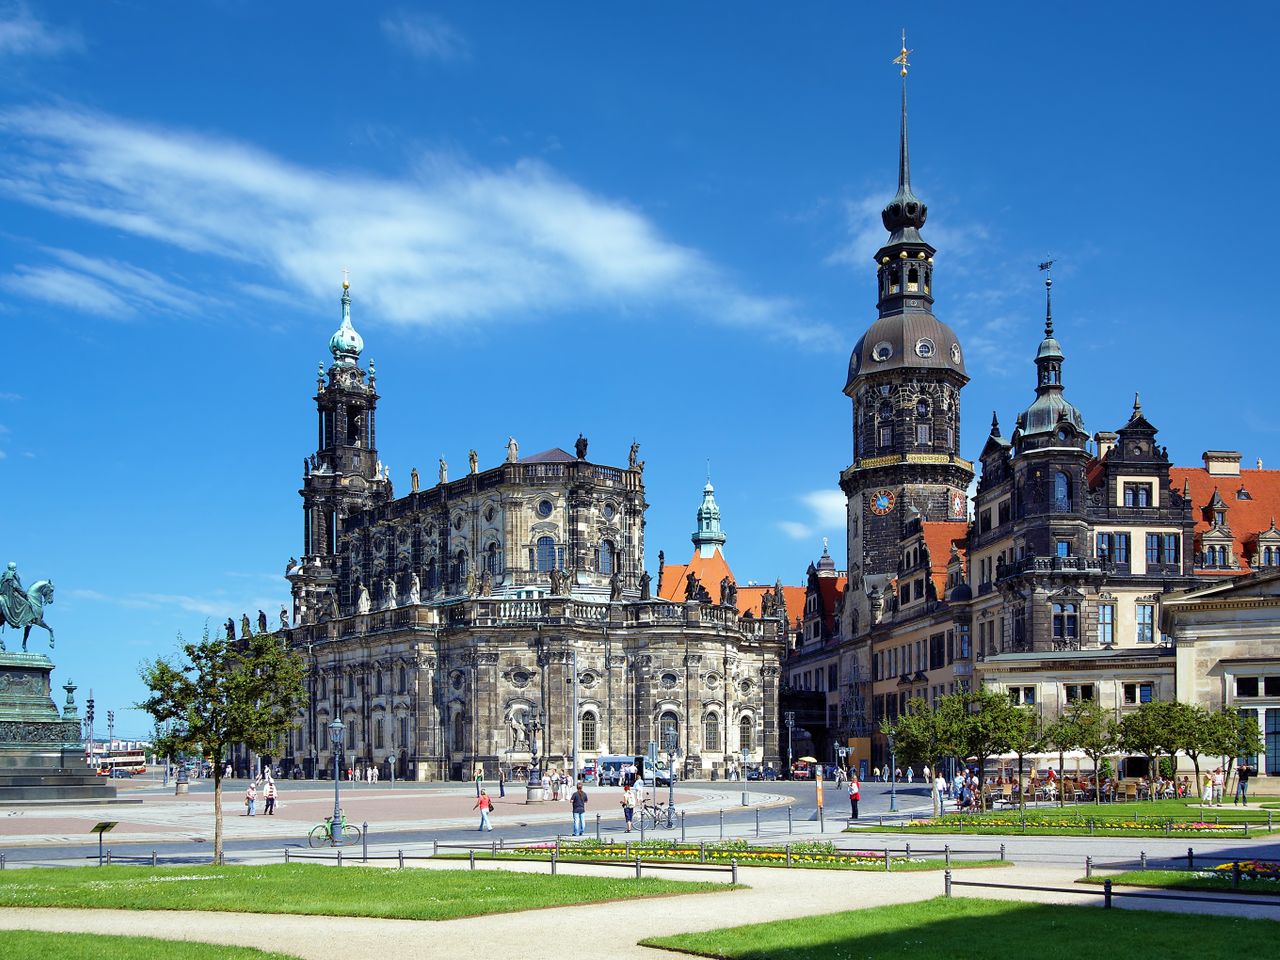 9 Tage Auszeit im Herzen von Dresden mit Frühstück